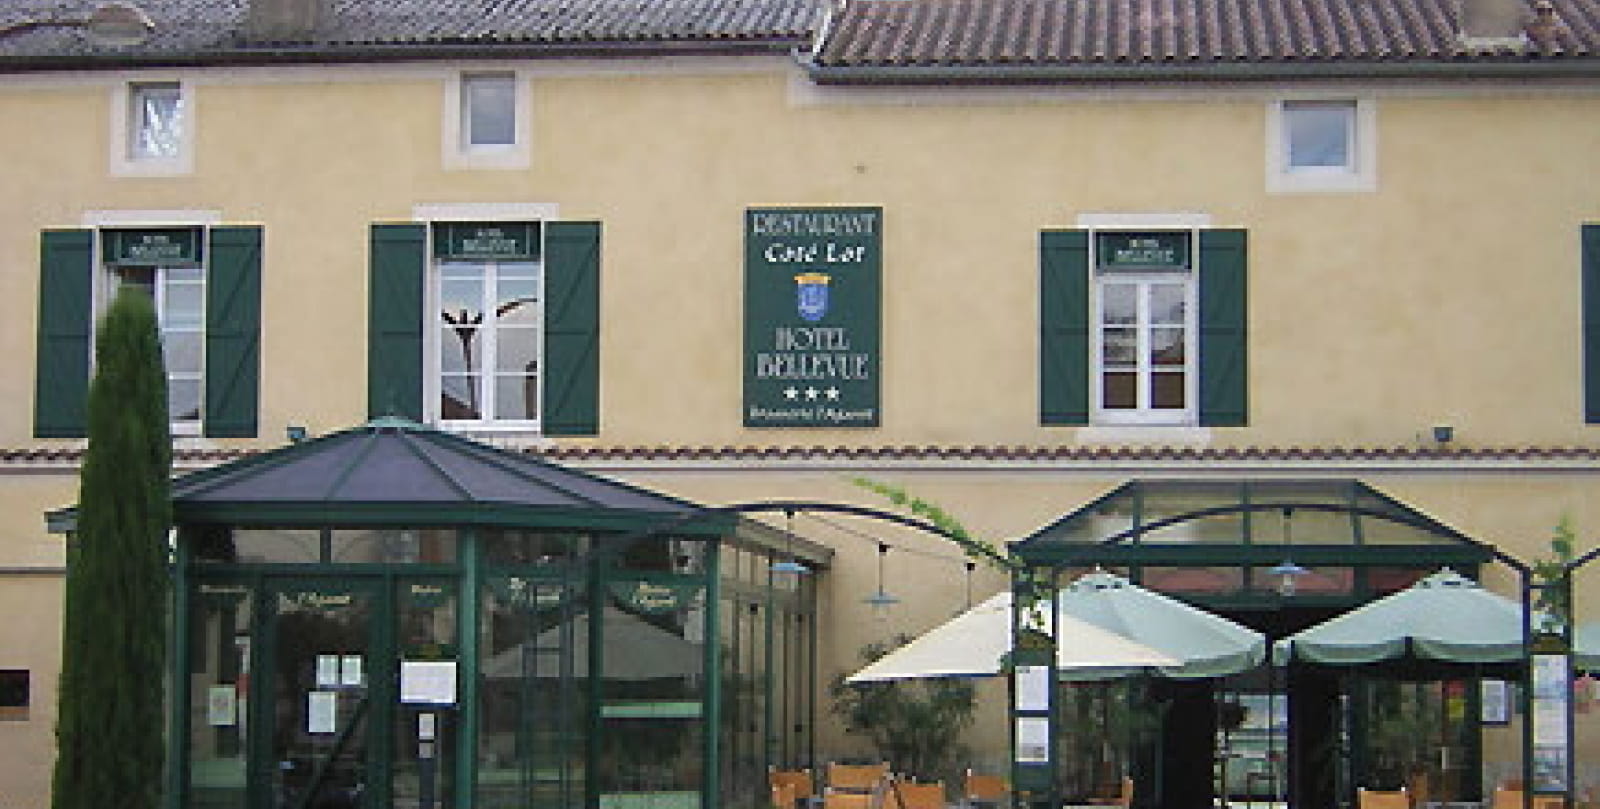 Hôtel Restaurant CÔTÉ LOT